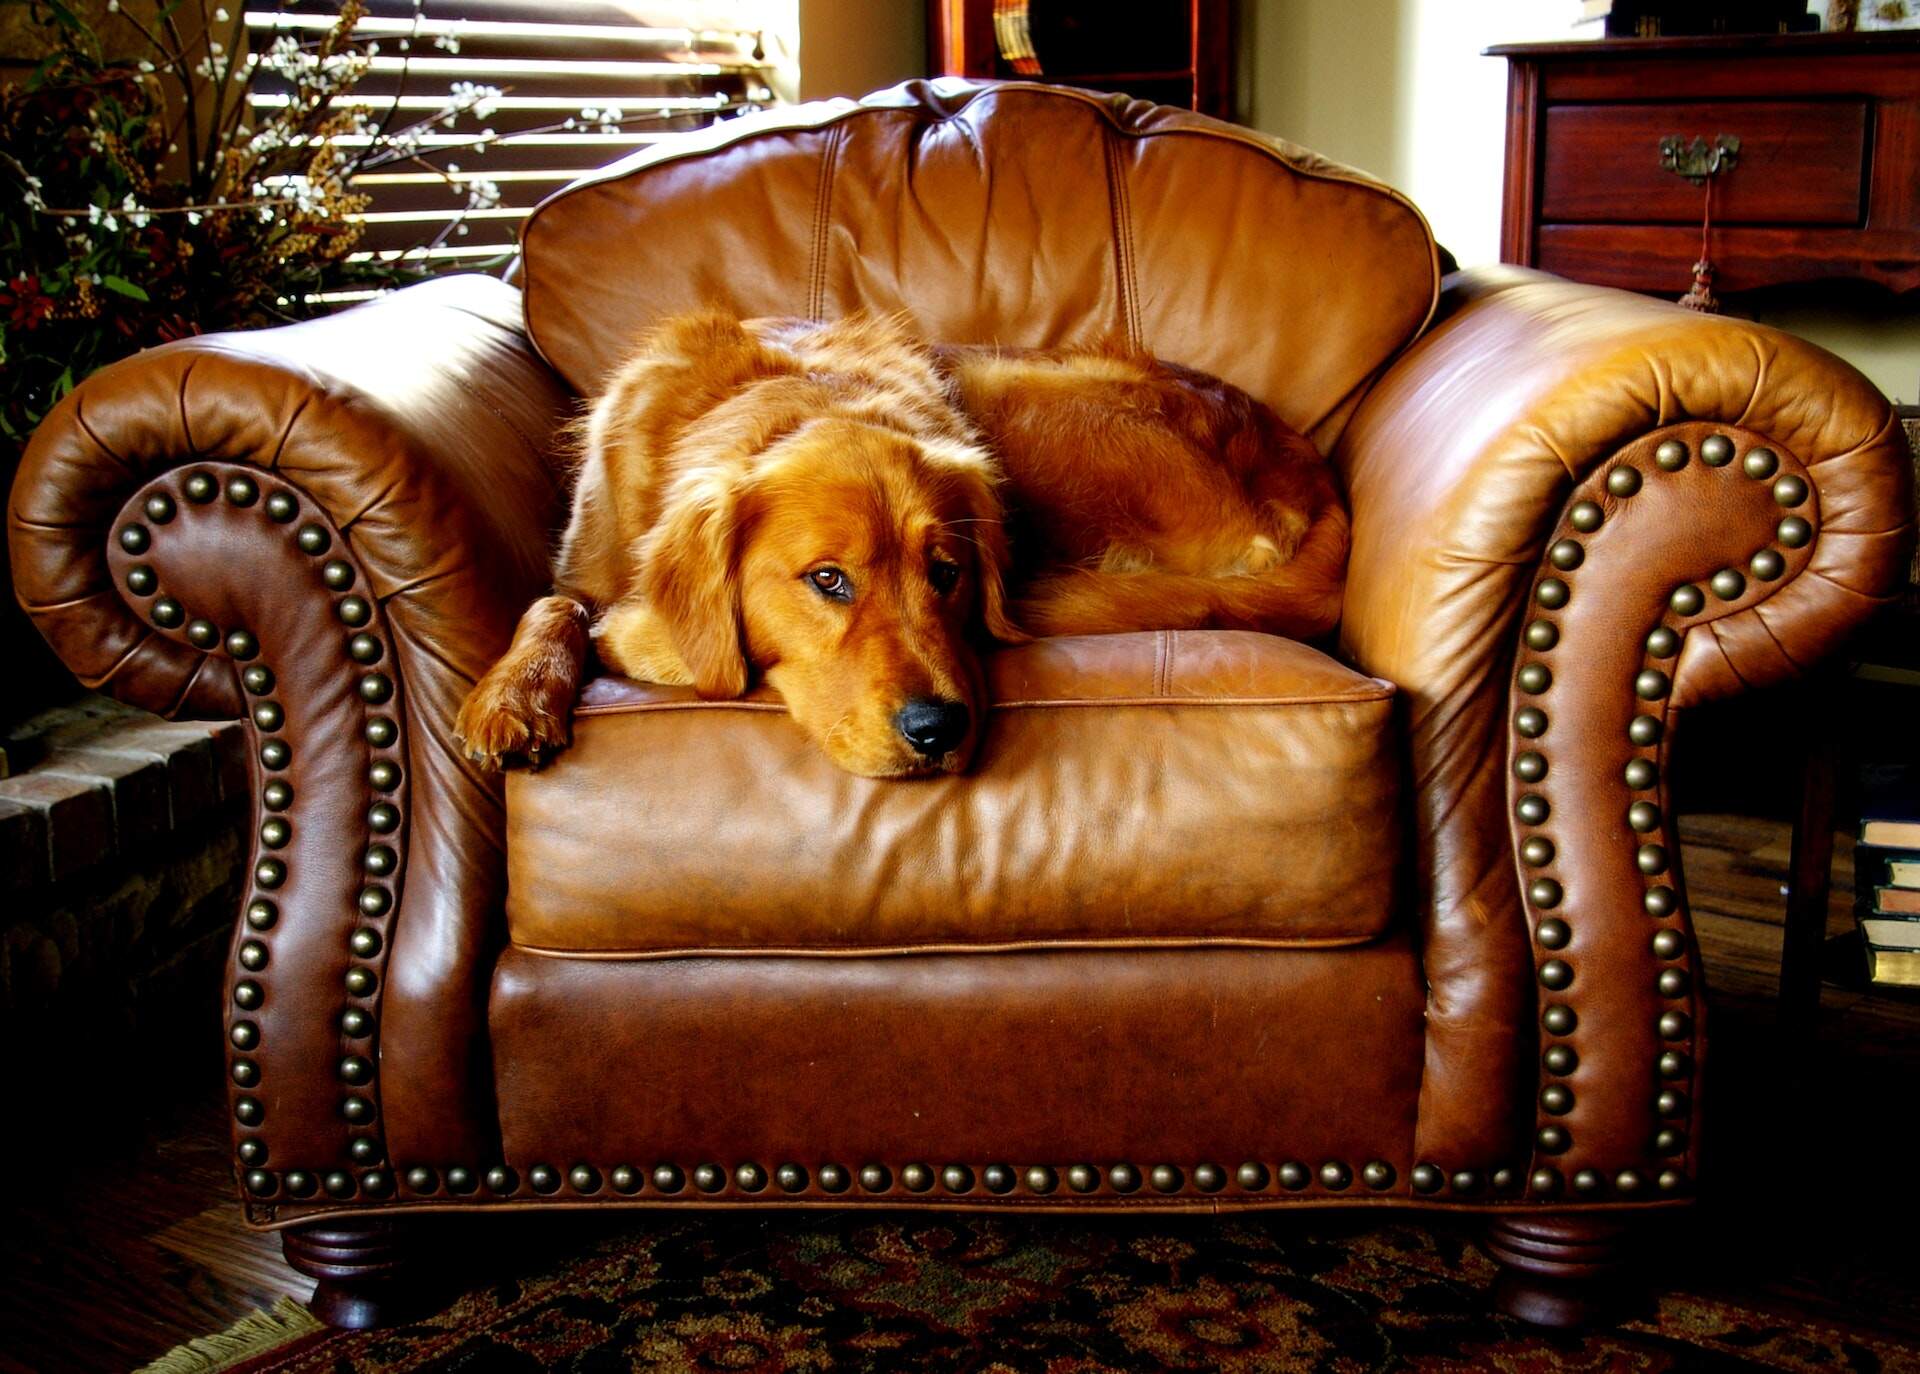 A dog sitting on an armchair